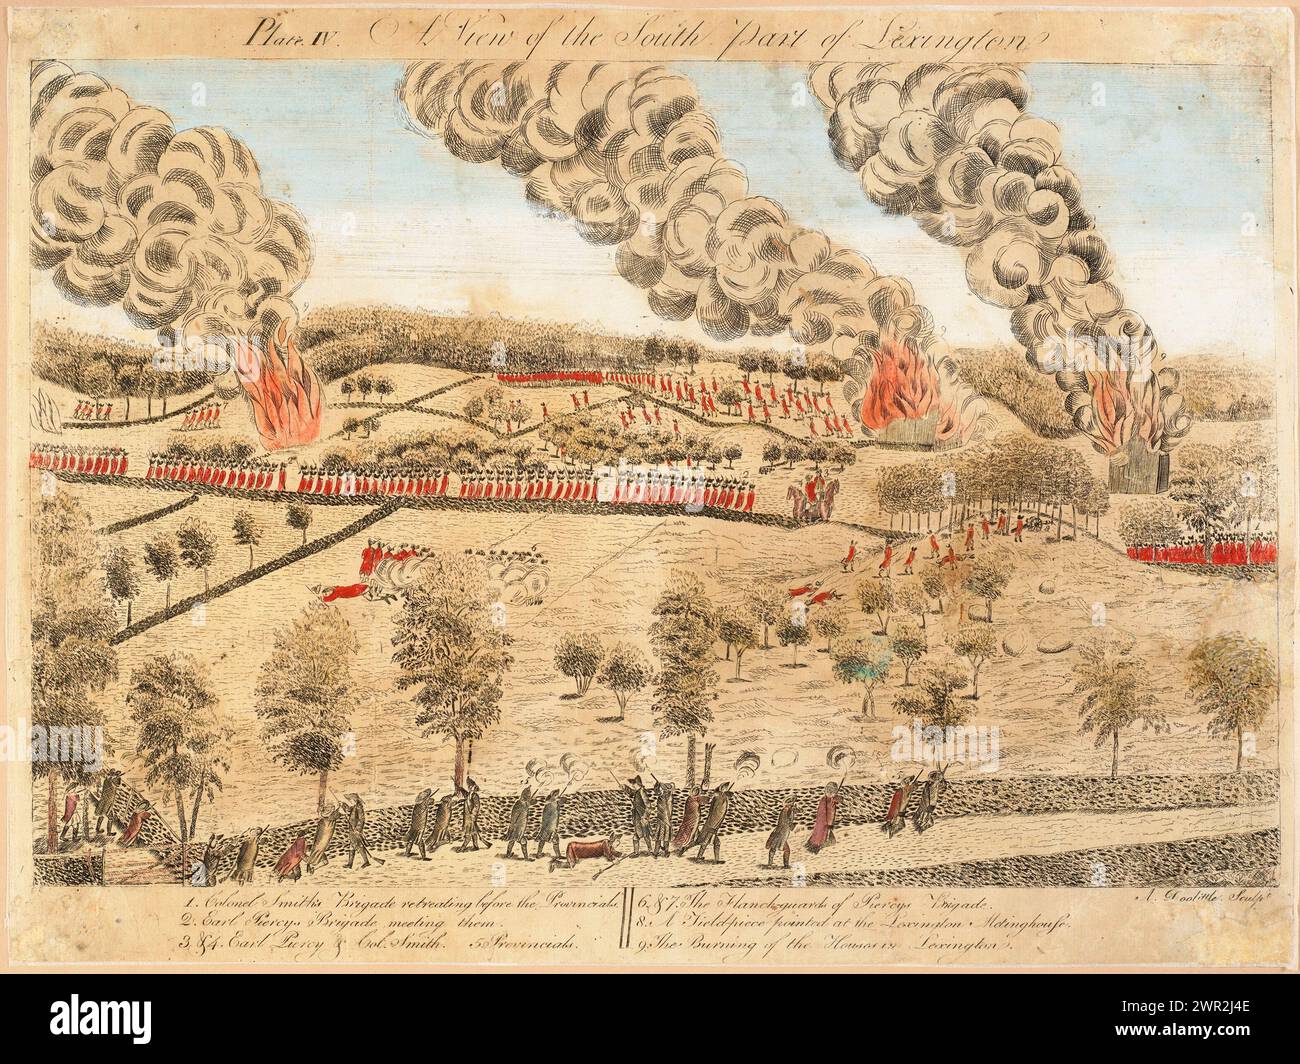 Impressions américaines historiques vintage : 'a View of the South part of Lexington'. Amos Doolittle, 1775 ans, représentant la bataille de Lexington, événement qui a marqué le début de la guerre d'indépendance américaine Banque D'Images